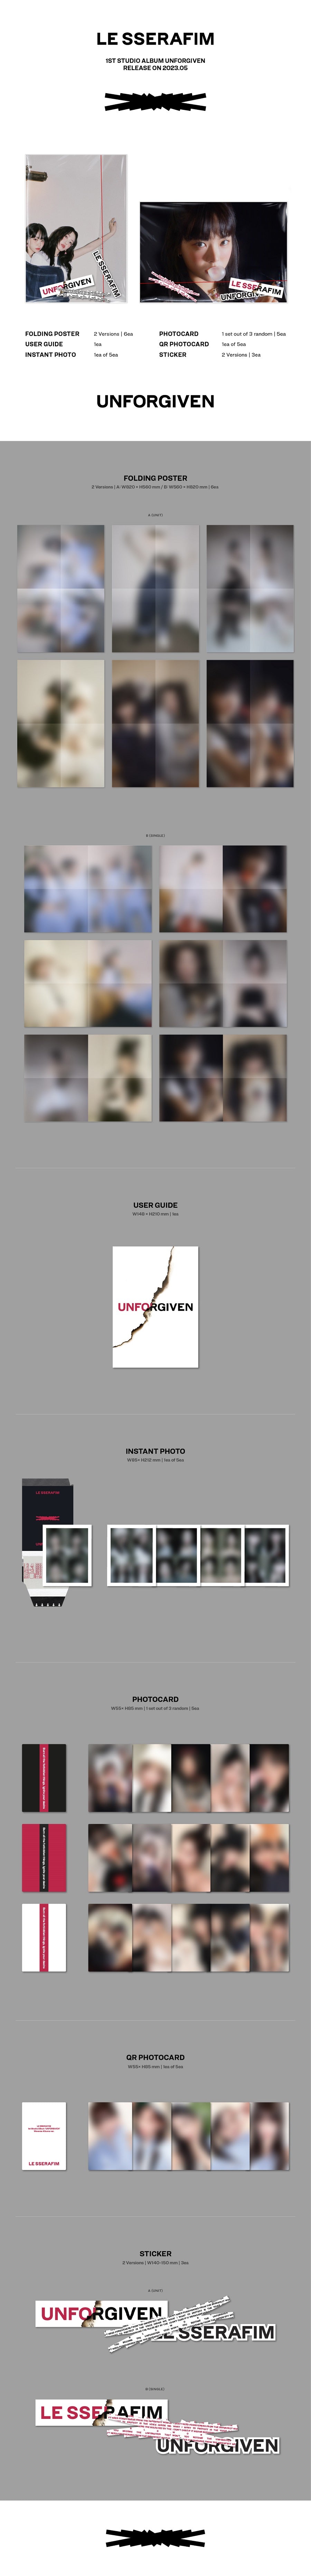 LE SSERAFIM Vol. 1 - UNFORGIVEN (Weverse Albums Version)